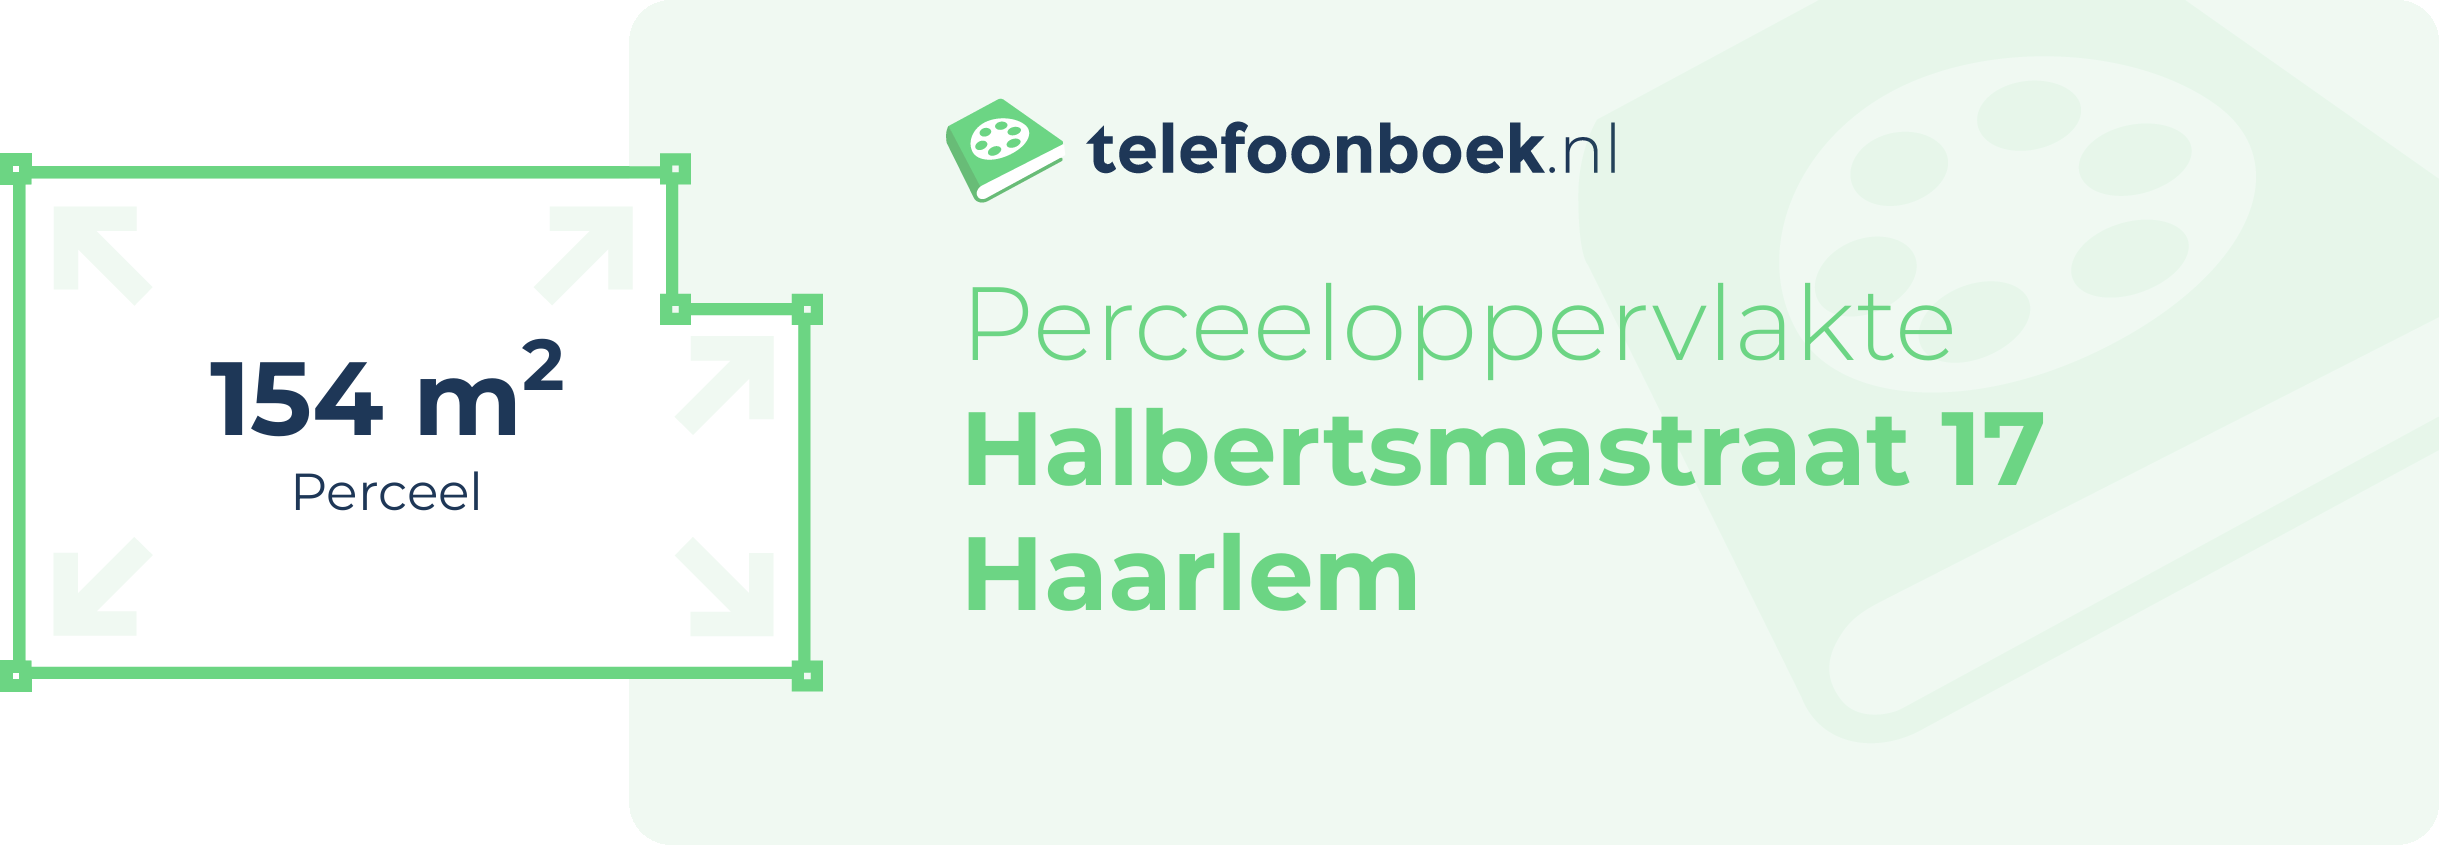 Perceeloppervlakte Halbertsmastraat 17 Haarlem